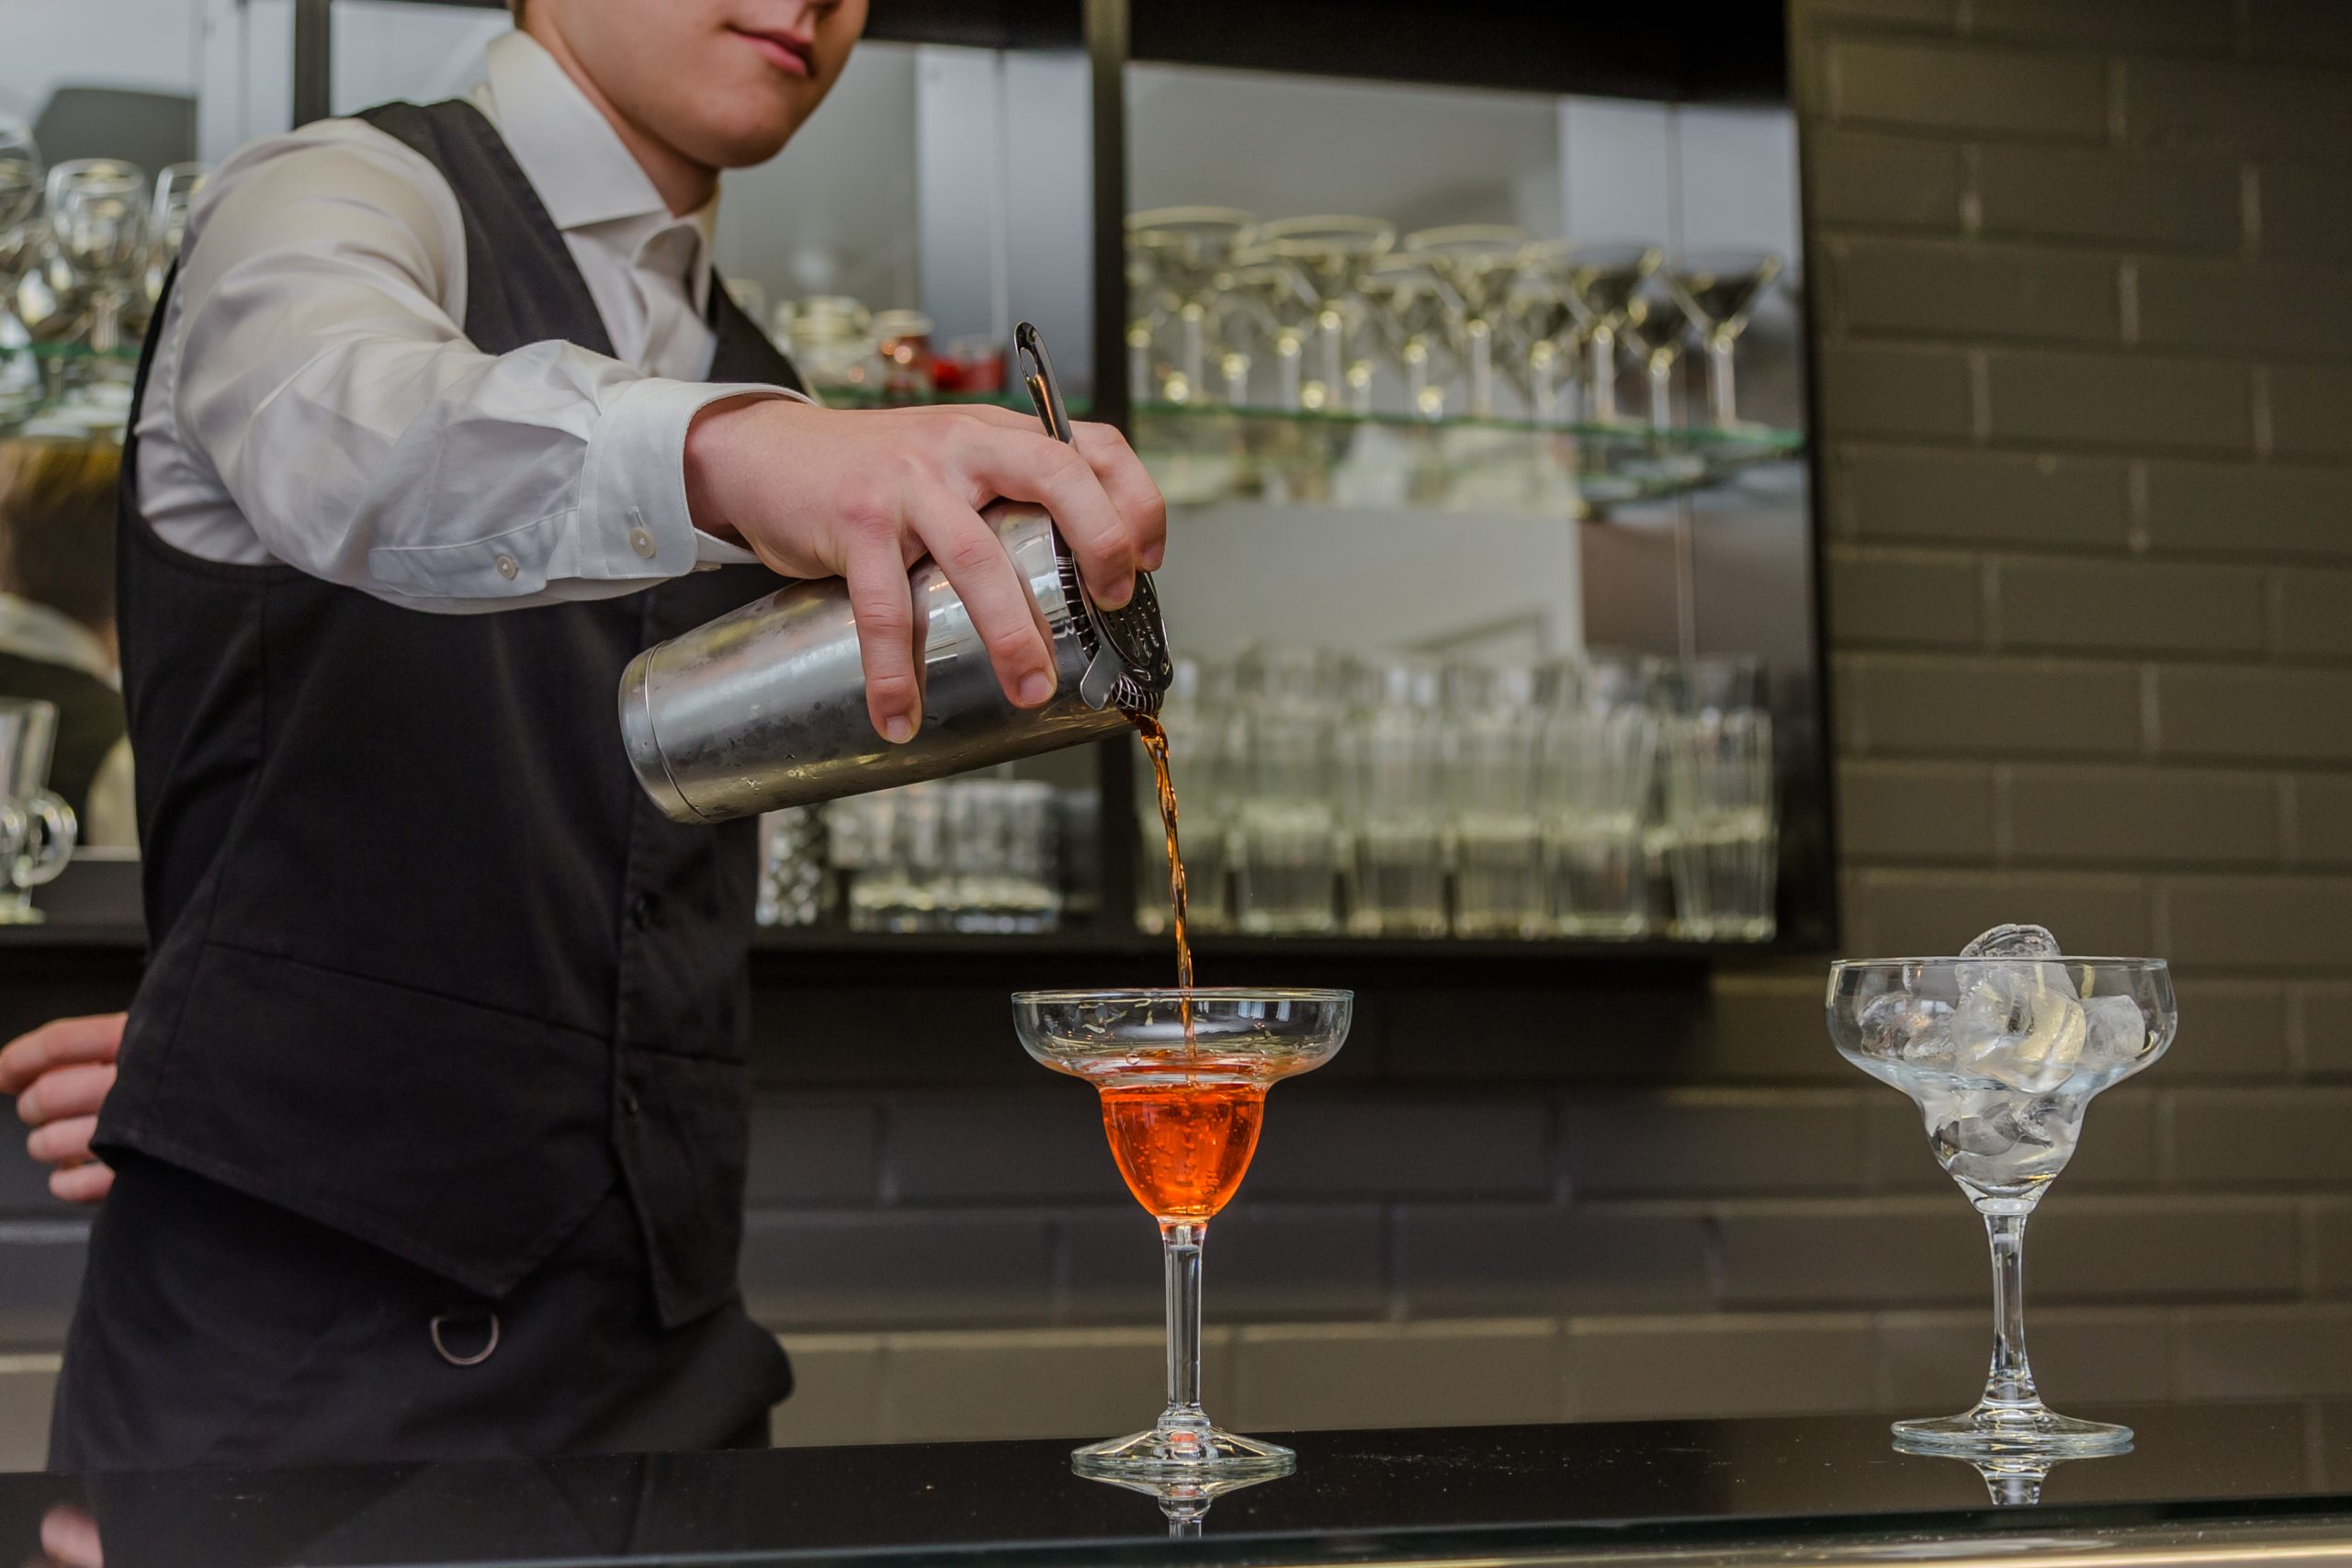 Valkeakosken ammattiopisto, VAAO, ravintolatyöntekijän työvaatteisiin pukeutunut henkilö annostelee punaista drinkkiä baaritiskillä olevaan korkeajalkaiseen lasiin.